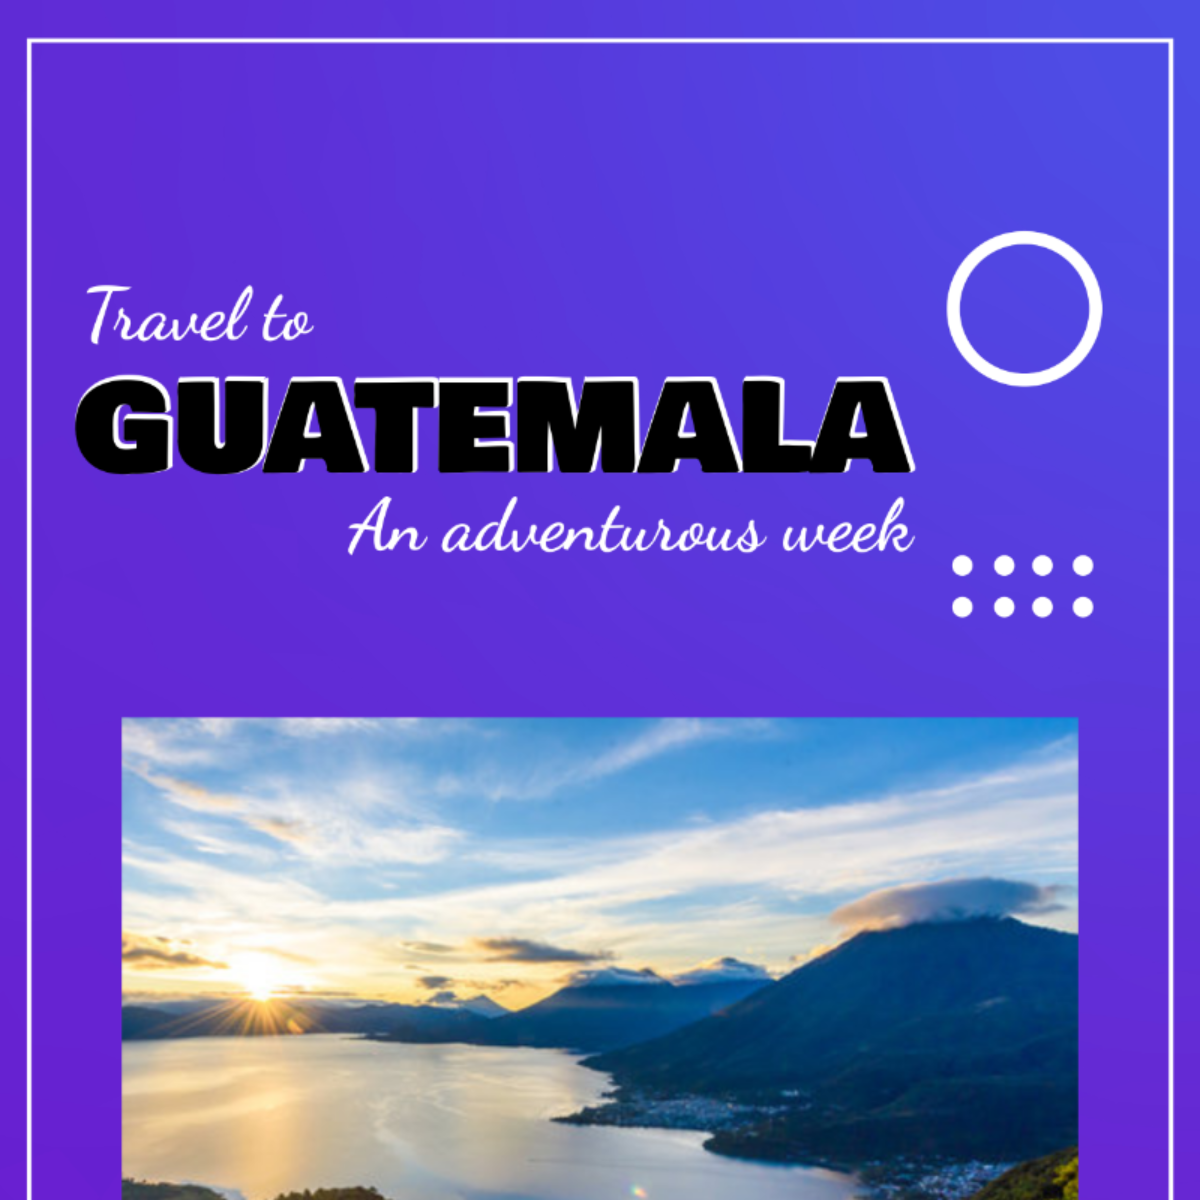 Free Guatemala Travel Itinerary Template